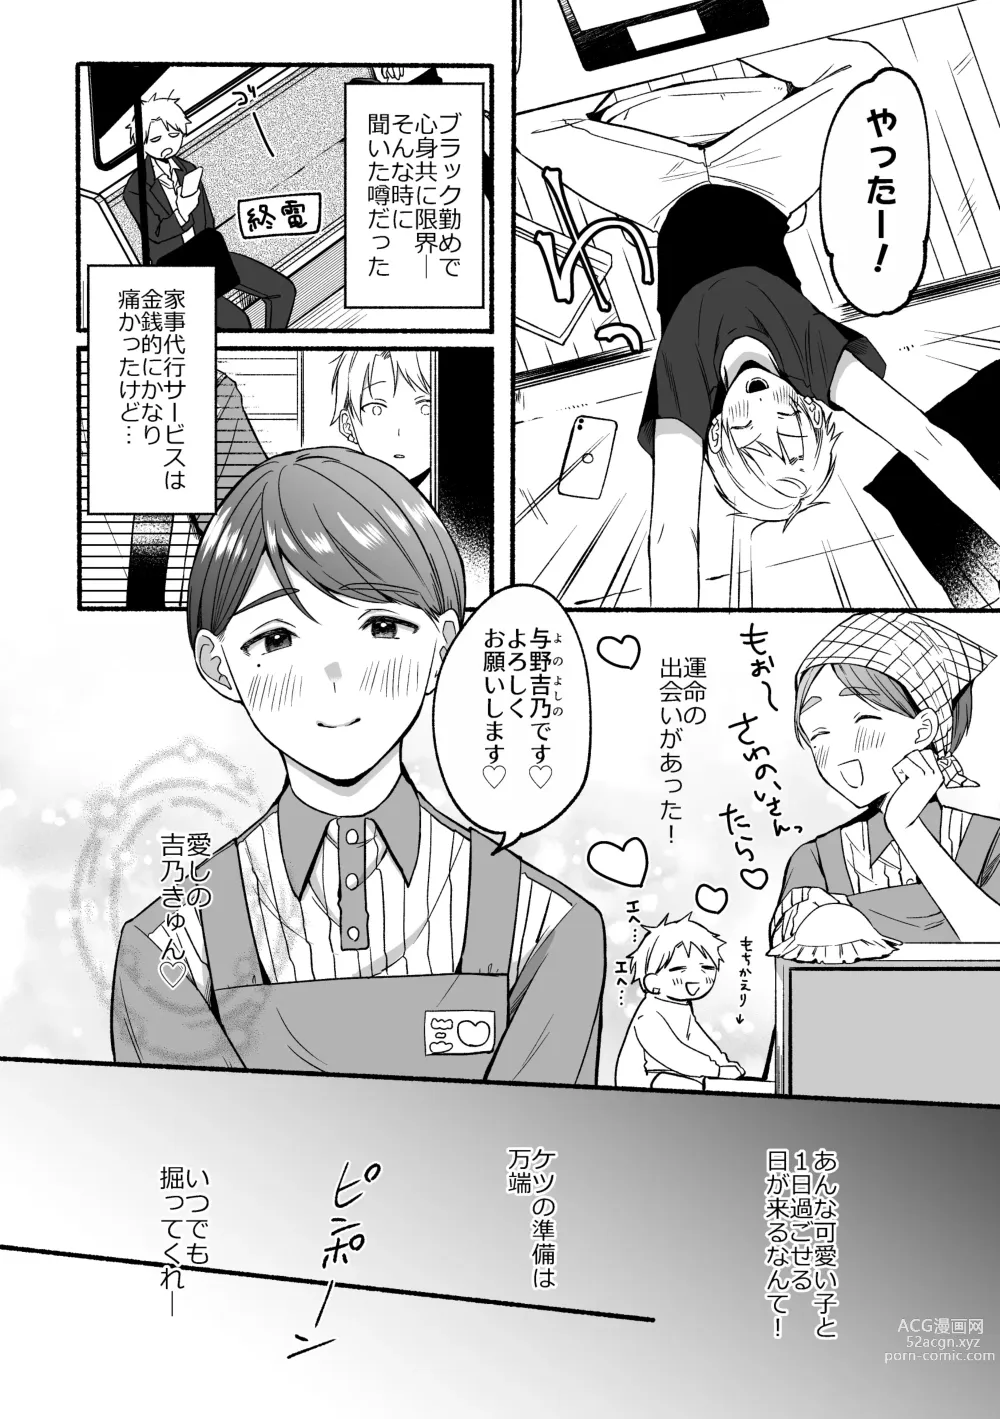 Page 6 of doujinshi Urasouji no Yoshino-kun